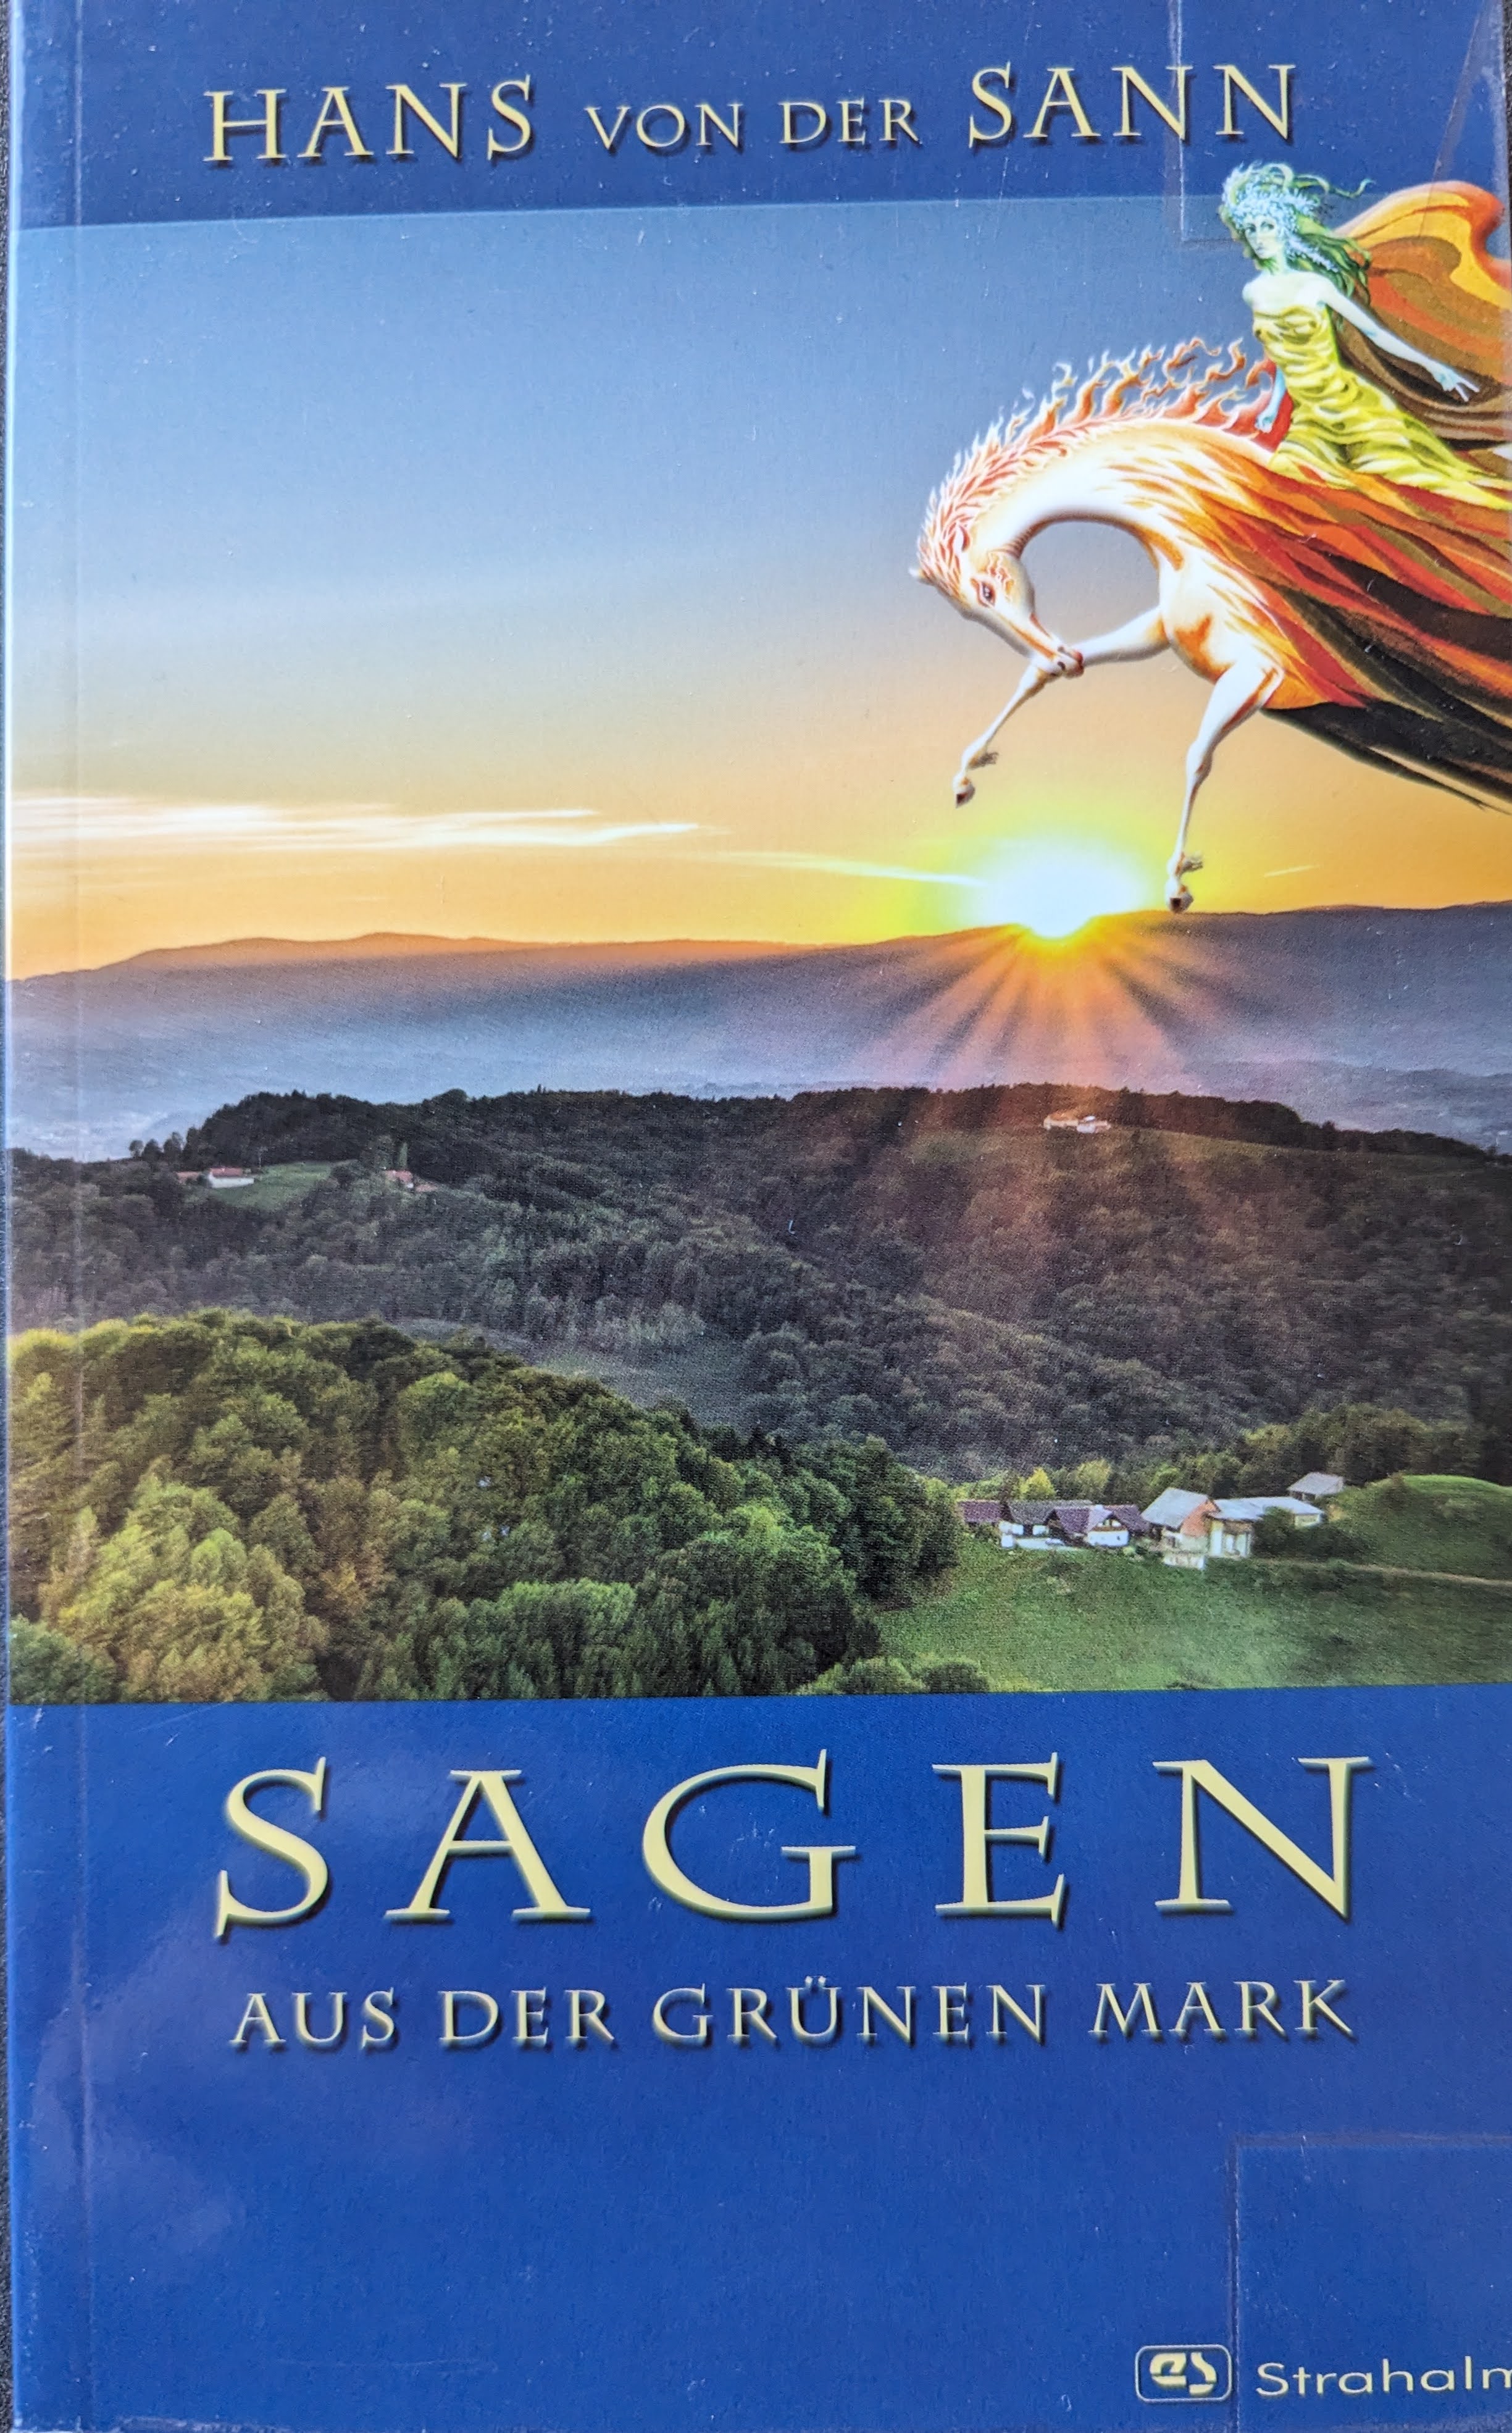 Hans von der Sann: Sagen aus der grünen Mark (Hardcover, German language, Leykam Buchverlag GmbH)